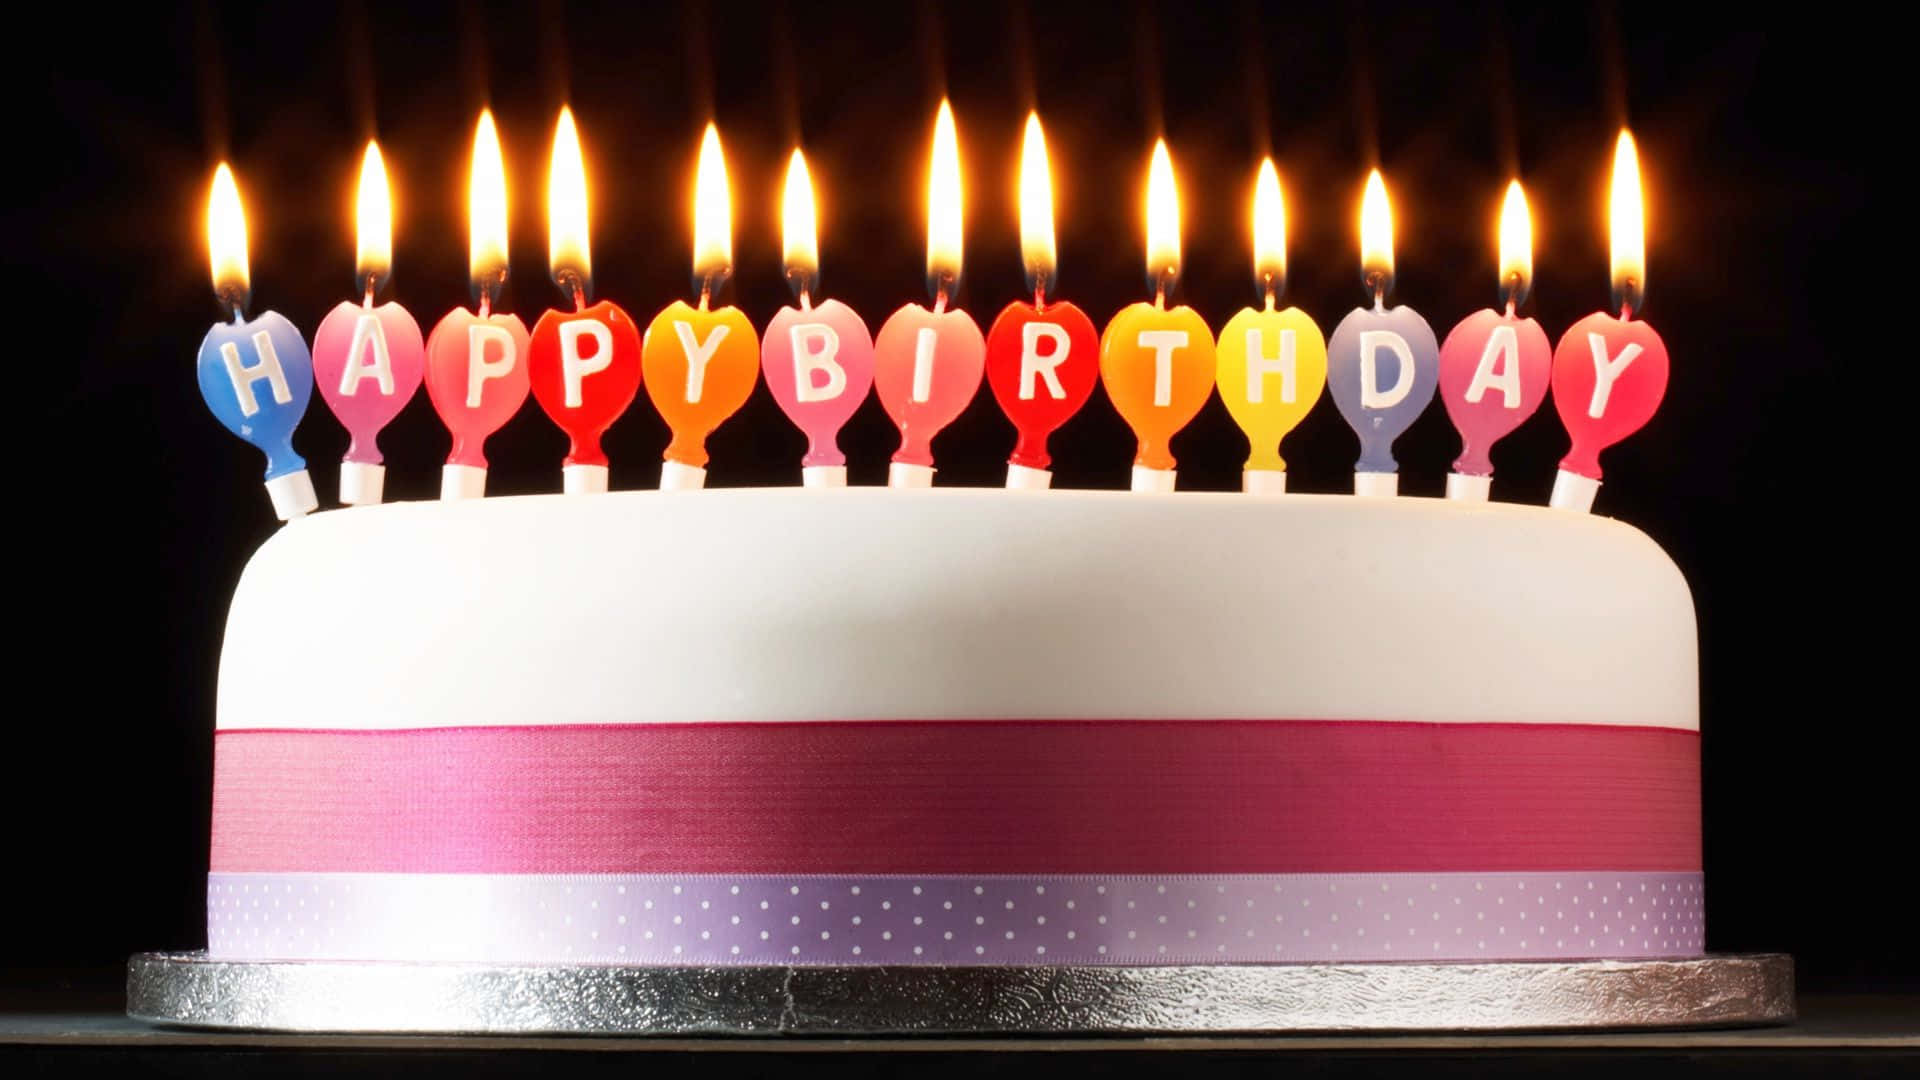 Geburtstagstortemit Pastellfarbenen Kerzen Im Hintergrund